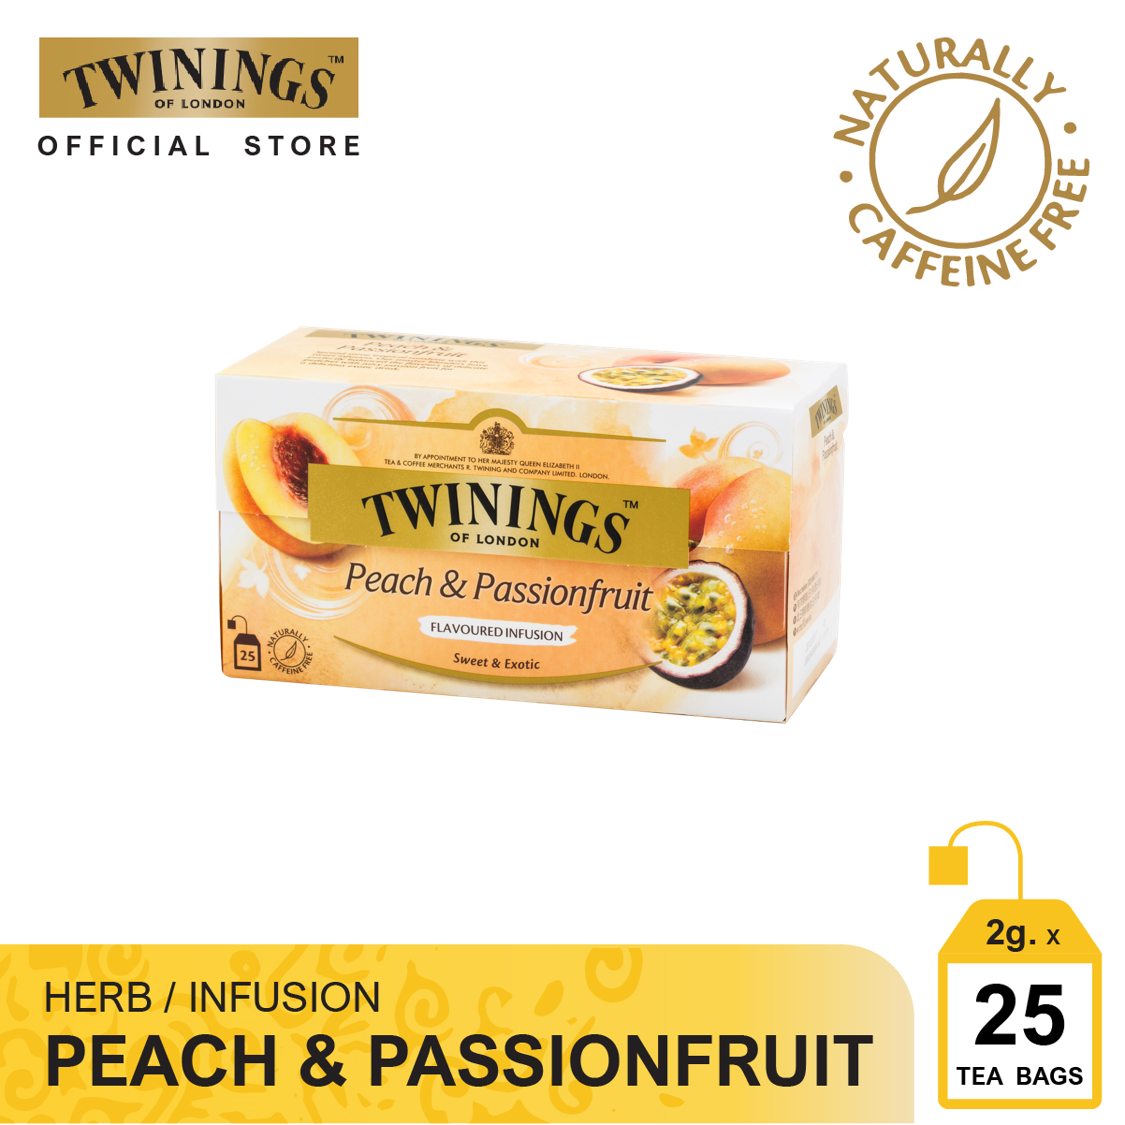 ทไวนิงส์ เครื่องดื่ม พีช เเอนด์ แพชชั่น ฟรุ้ต ชนิดซอง 2 กรัม แพ็ค 25 ซอง Twinings Peach & Passionfruit 2 g. Pack 25 Tea Bags